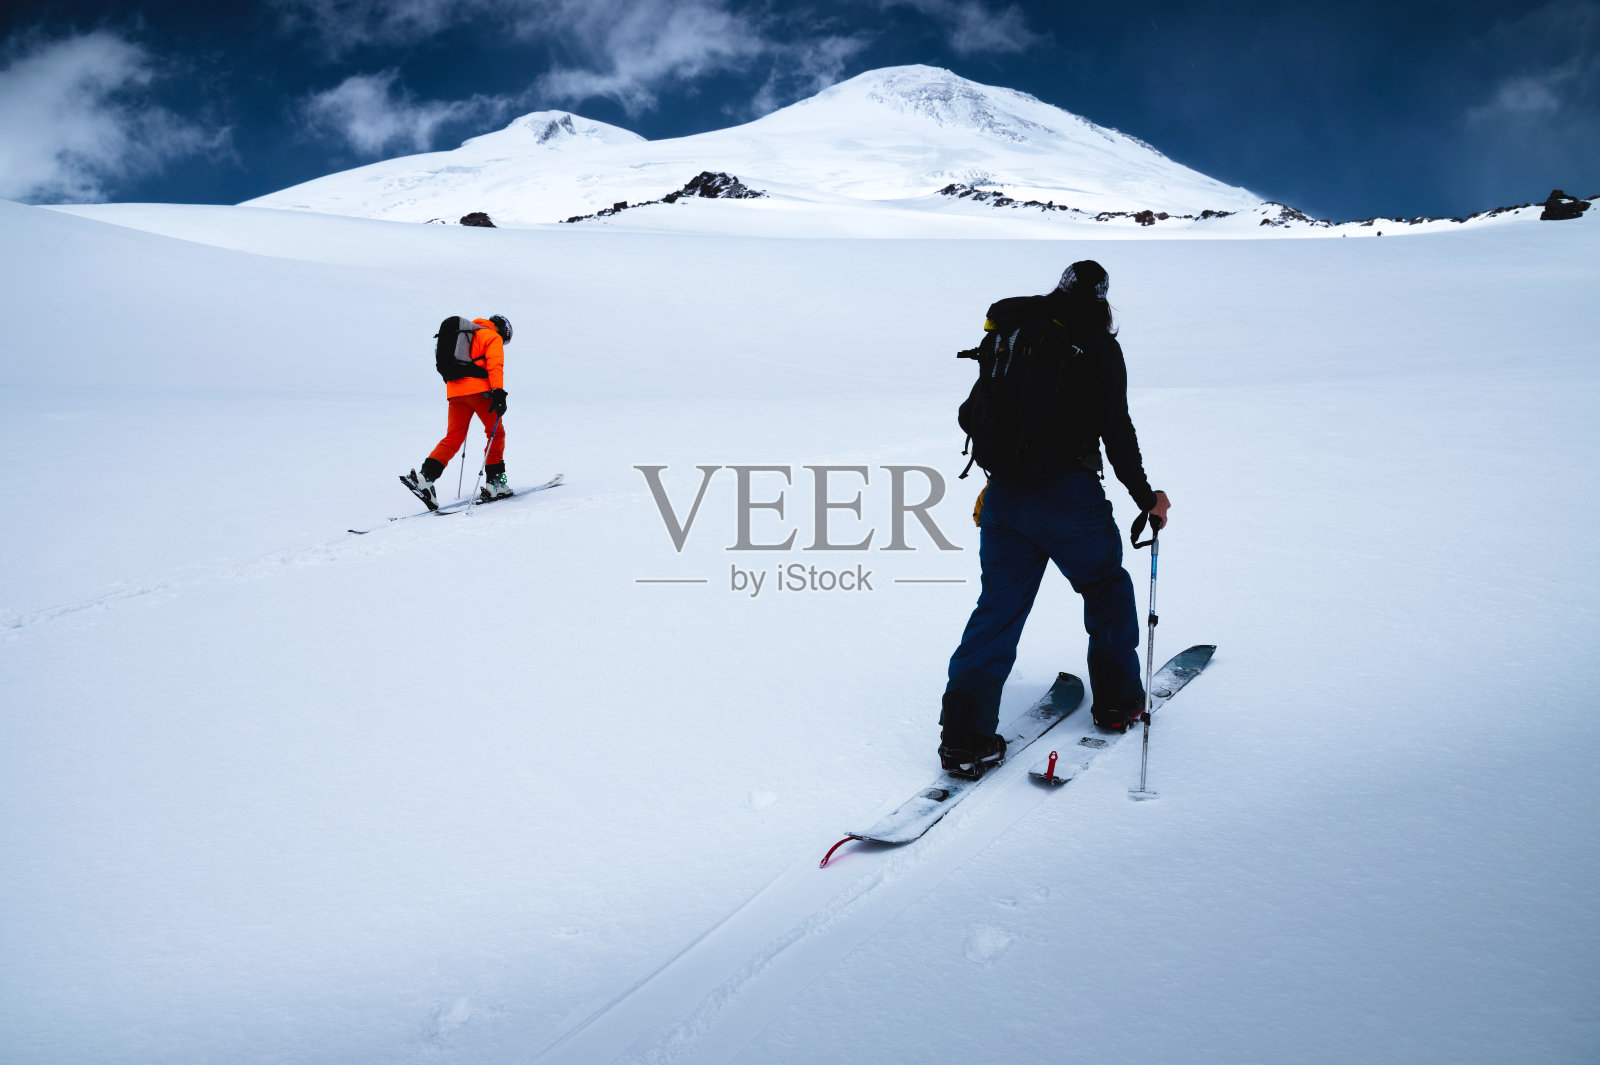 在一次滑雪之旅中，两个免费乘车的滑雪者爬上了刚下过的雪。厄尔布鲁斯山的顶峰和背景上的蓝天照片摄影图片